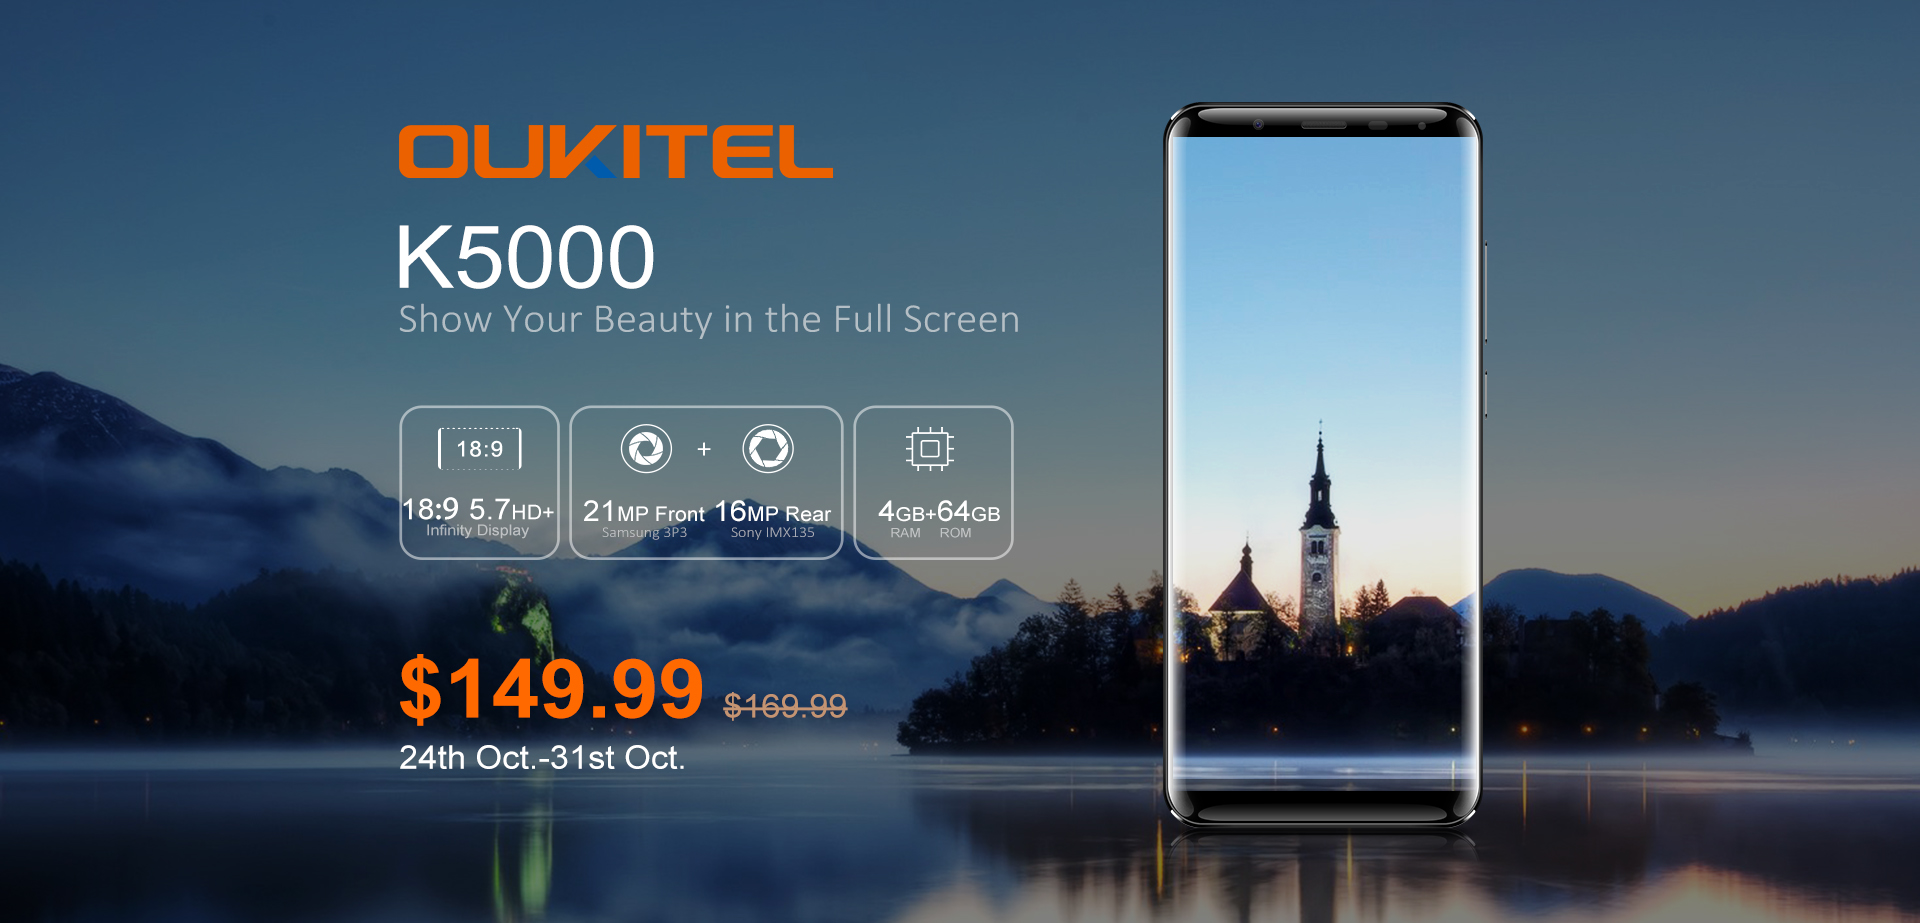 Le smartphone OUKITEL K5000 est disponible en pré-commande